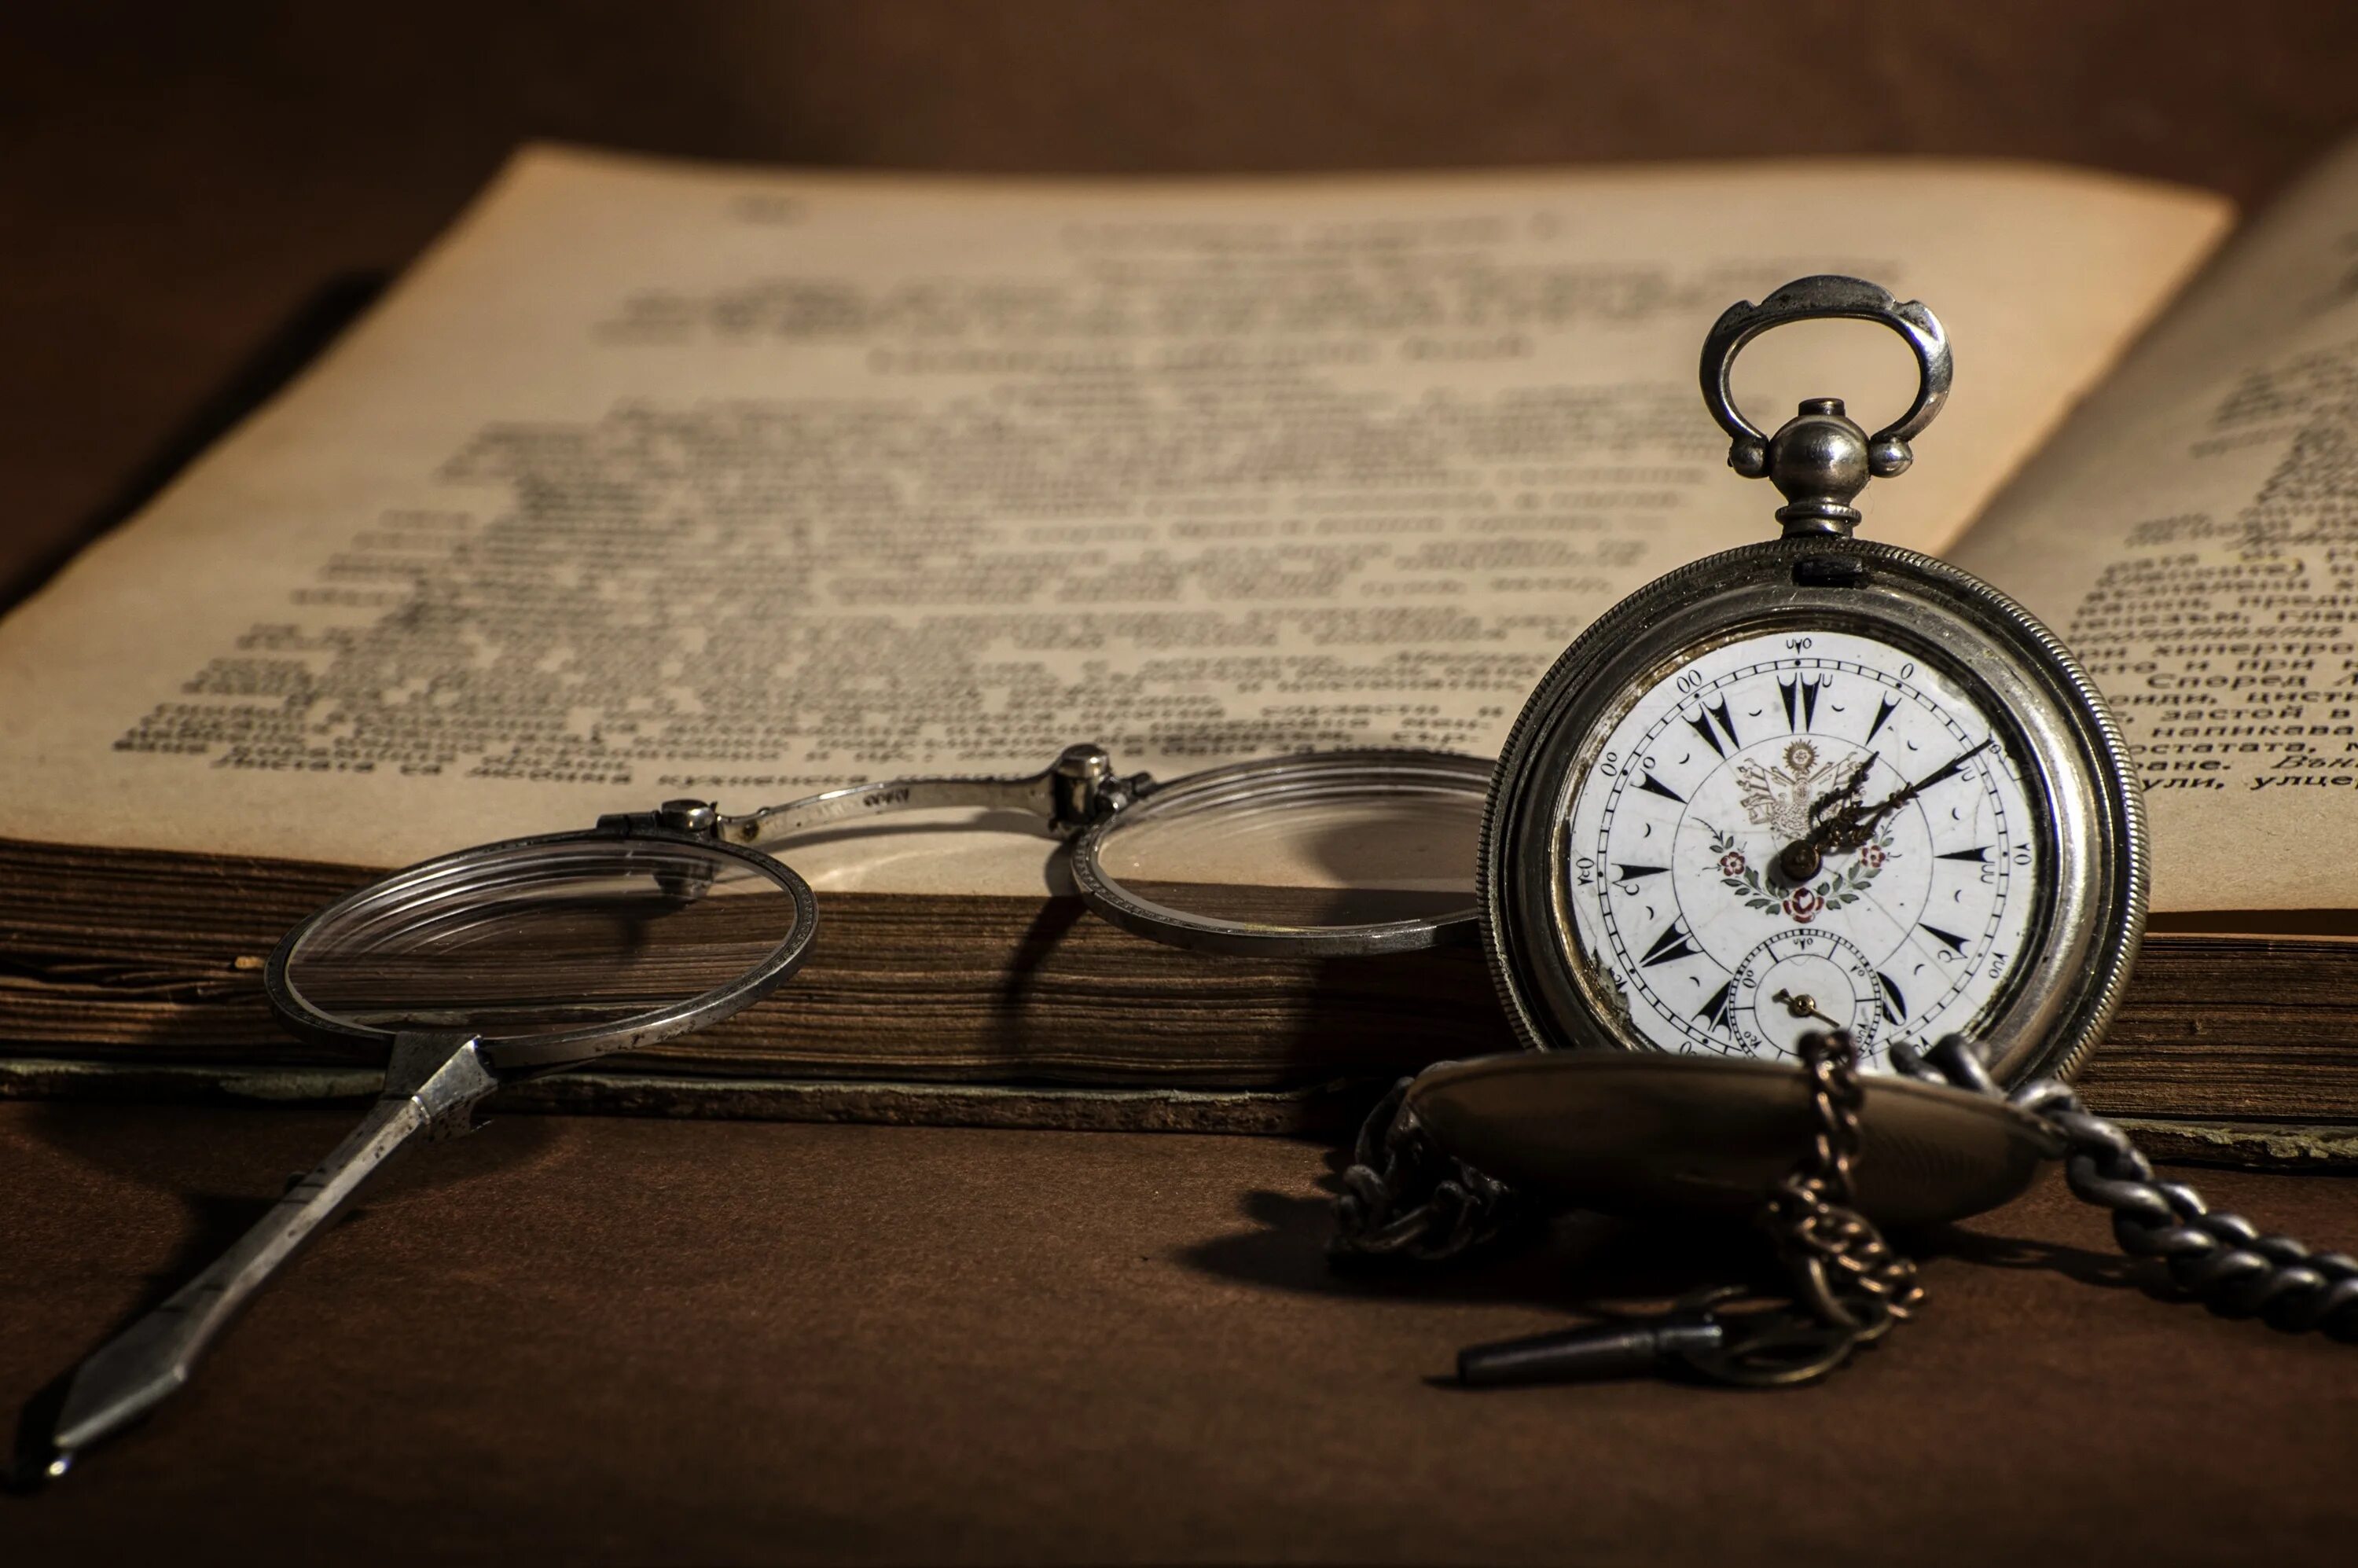 Старинные часы. Старинные карманные часы. Старинные карманные часы на столе. Книга и часы.